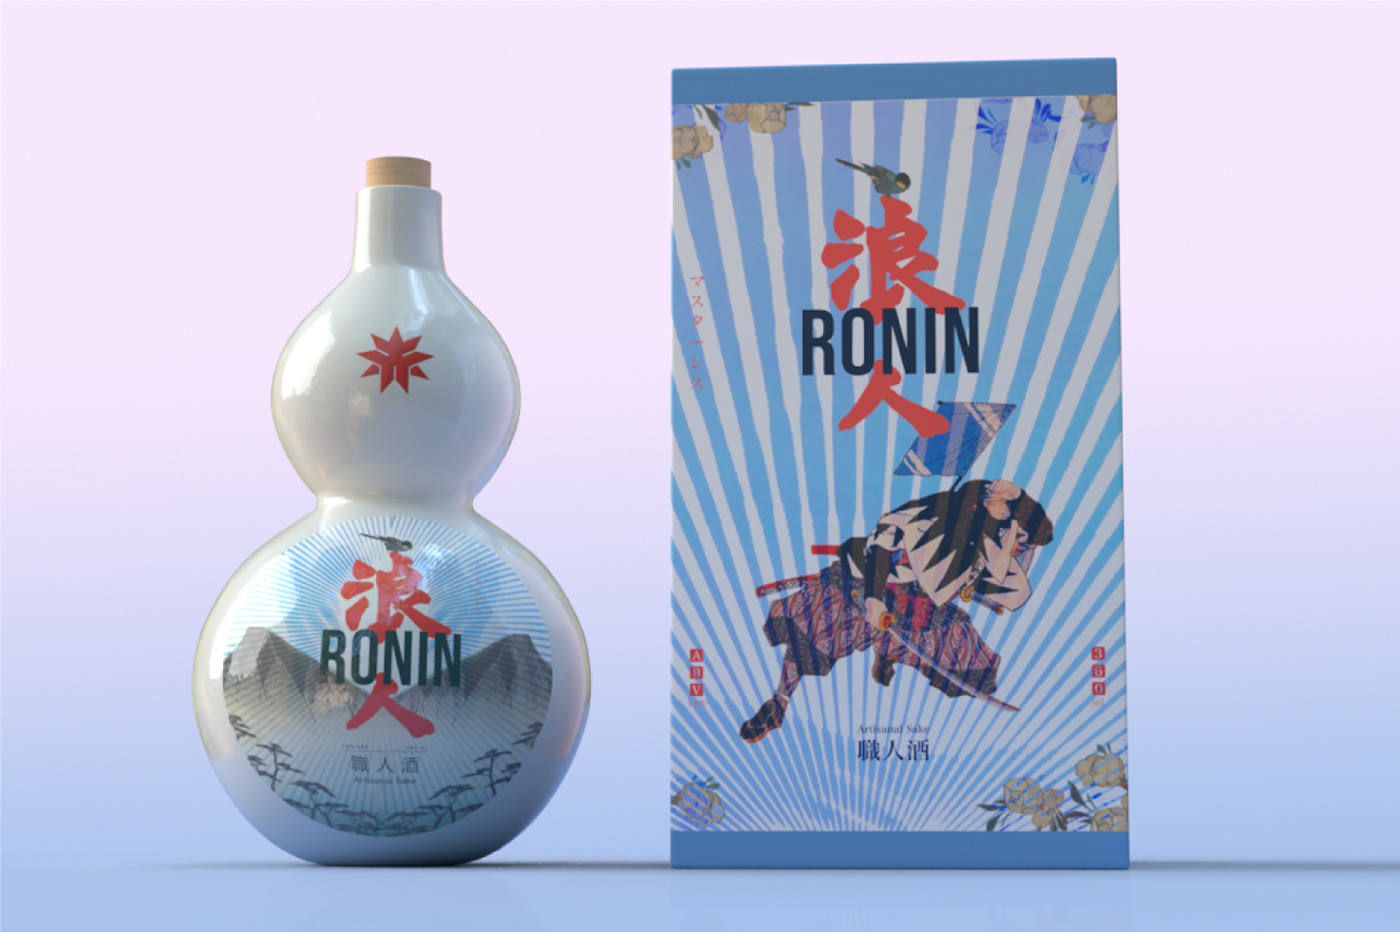 3D model 47 Ronin Adobe Dimension alcohol product  Artisanal Liquor japanese sake package design  product design  product mockup Ronin Sake